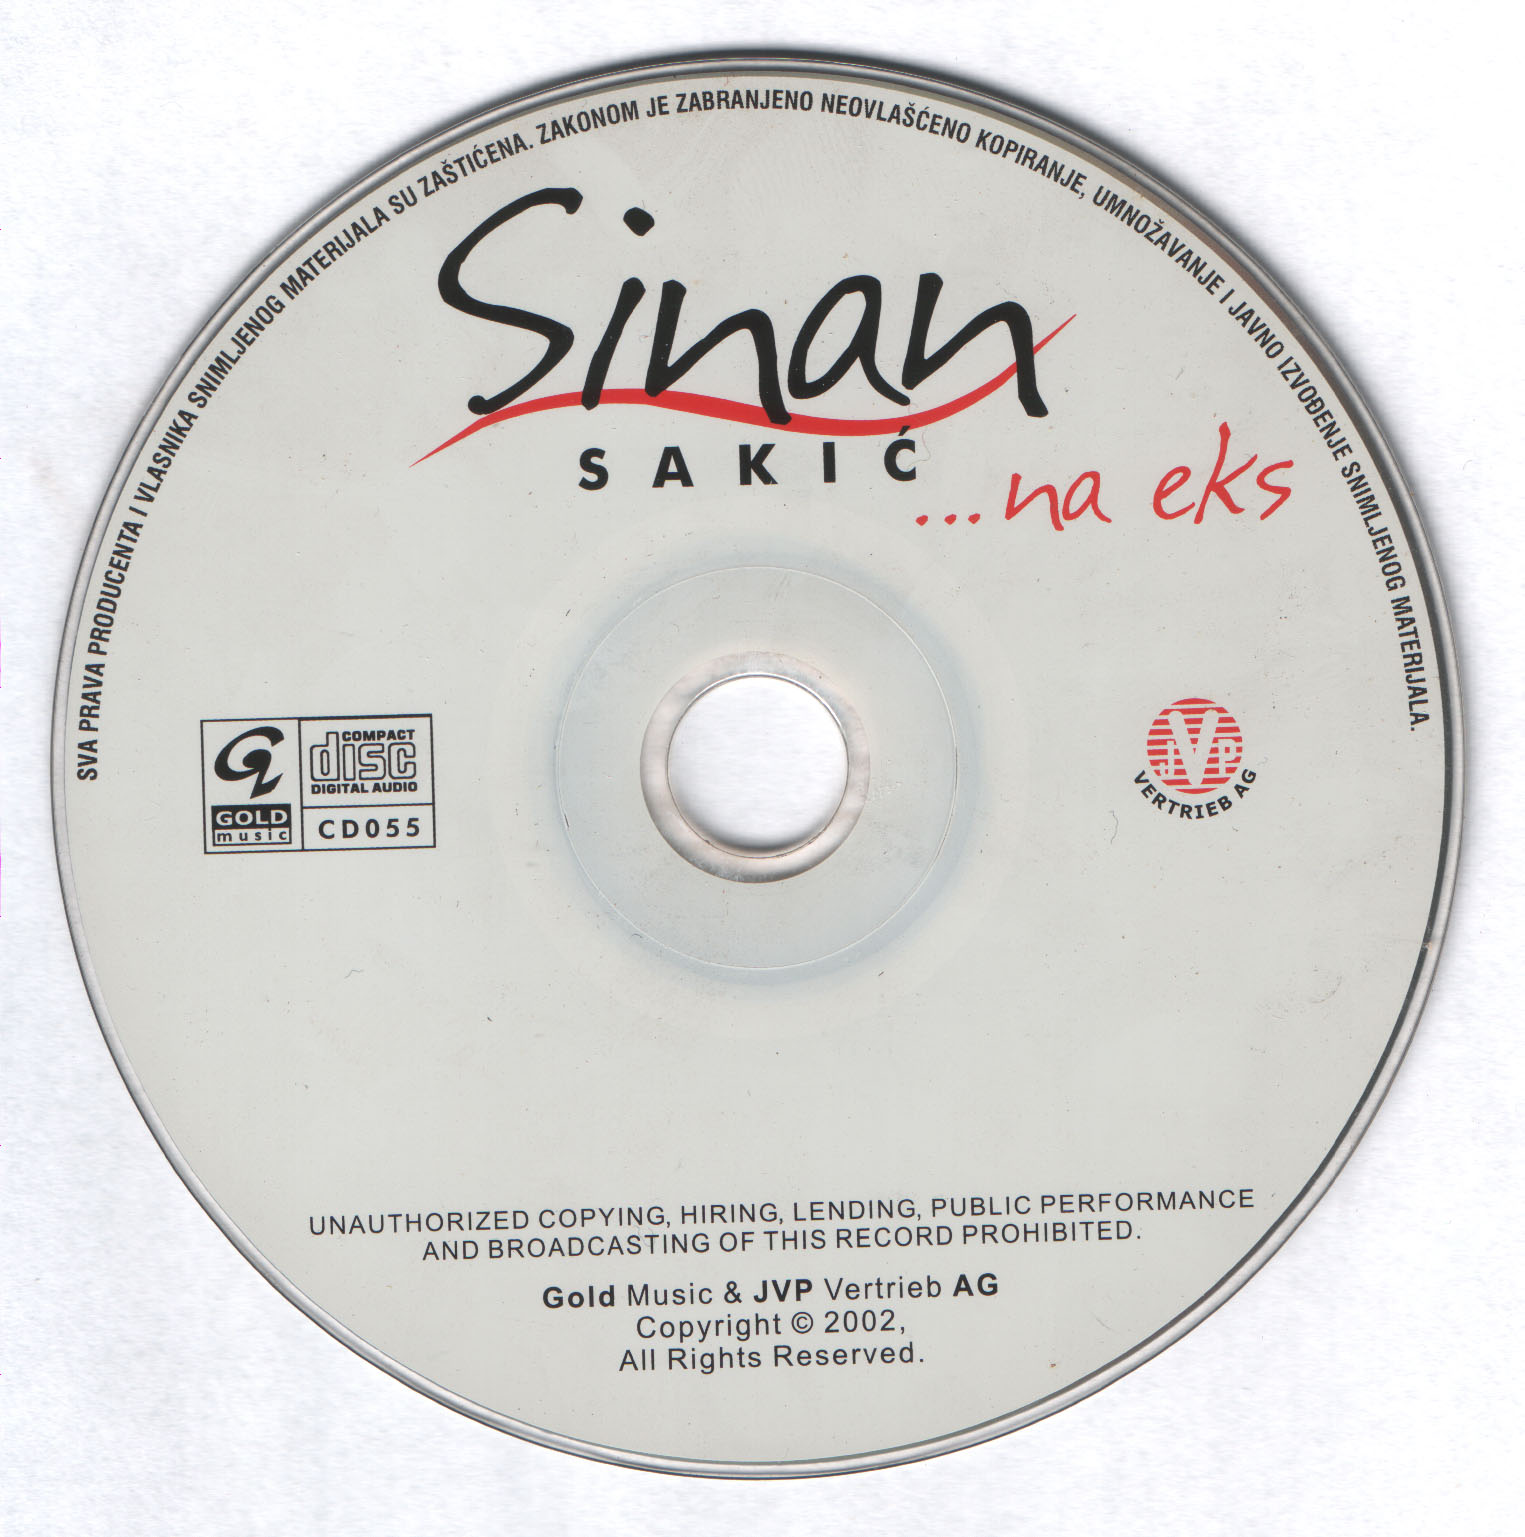 Sinan Sakic 2002 Cd